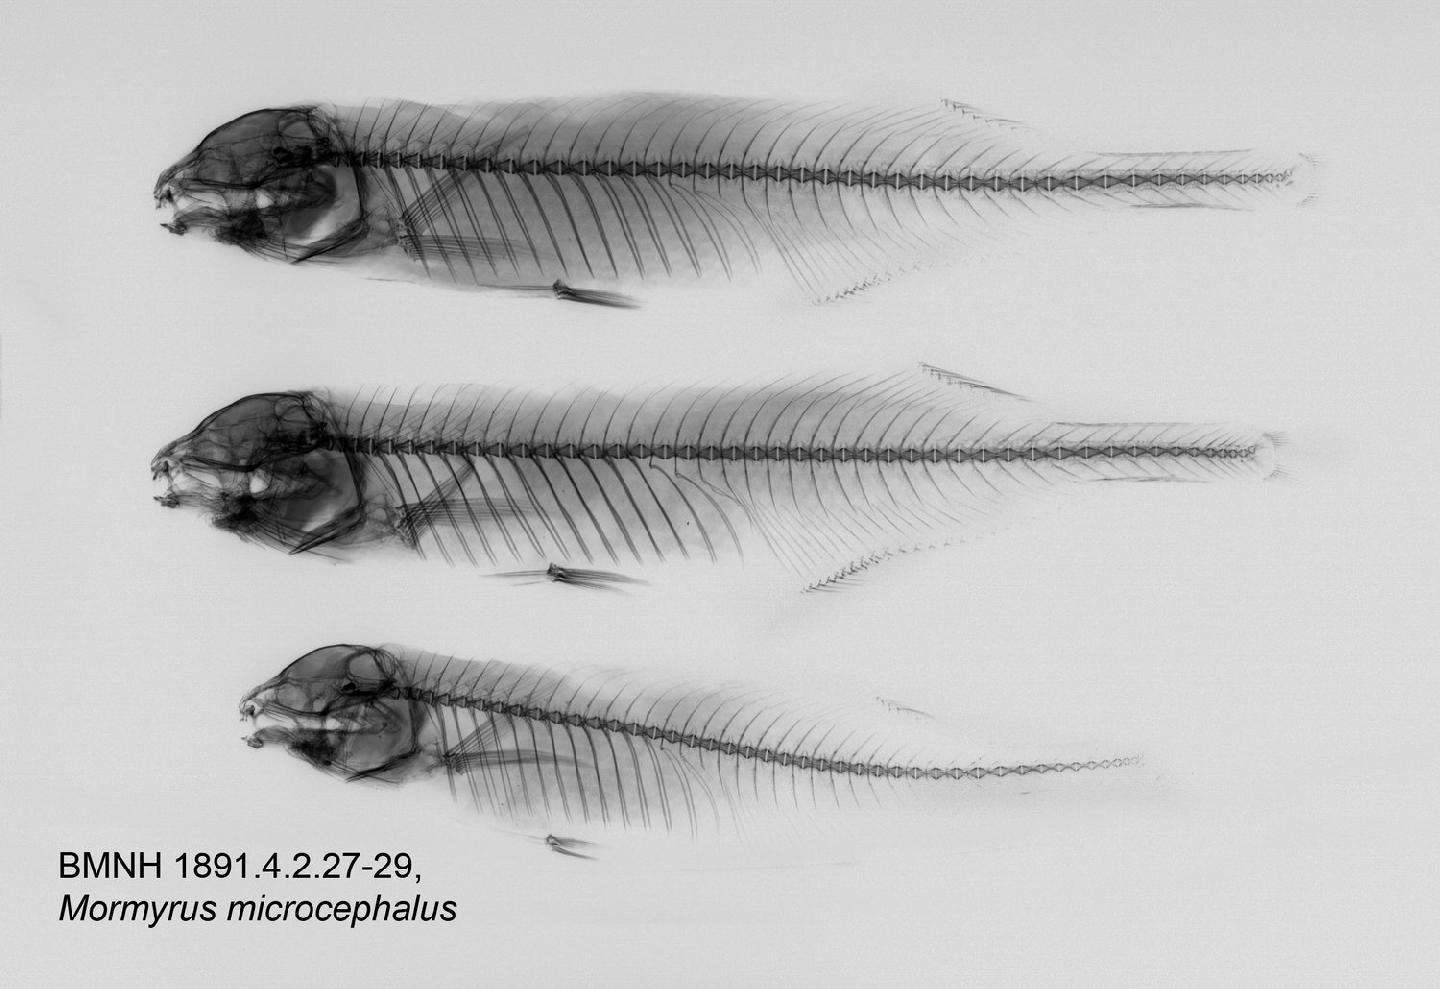 To NHMUK collection (Mormyrus microcephalus Günther, 1867; NHMUK:ecatalogue:3117469)